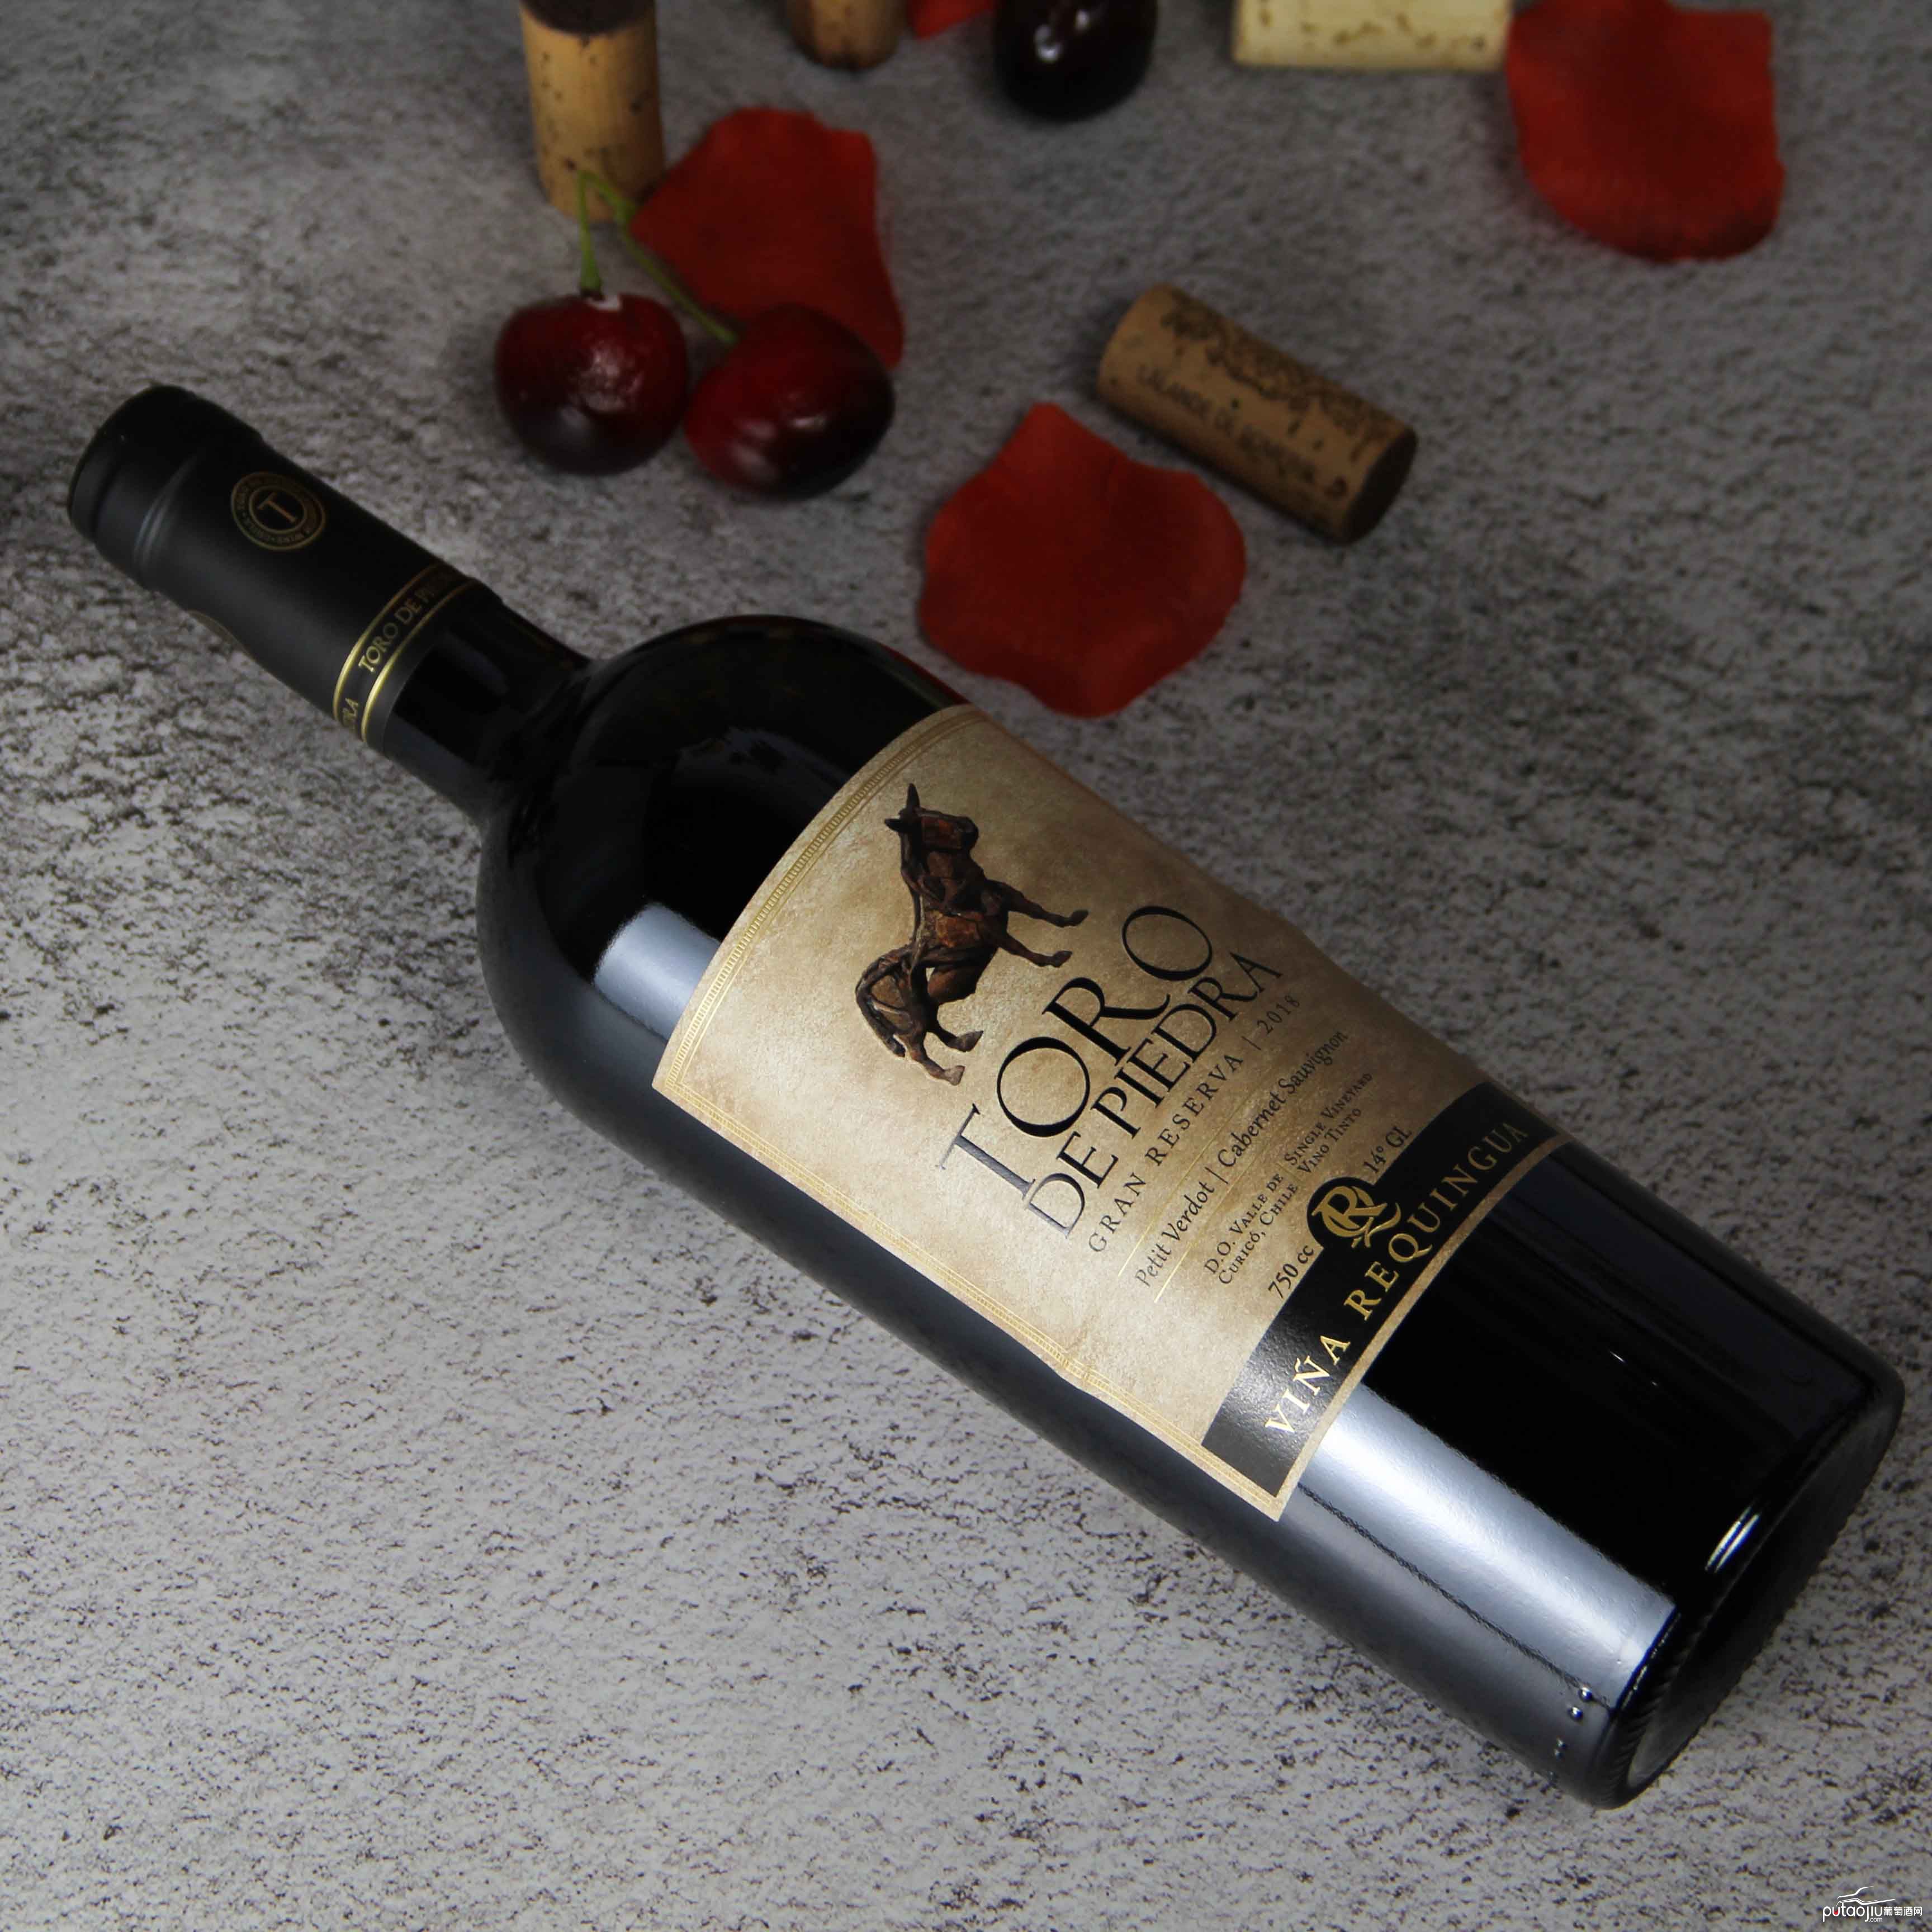 智利巨石牛特级珍藏小维尔多赤霞珠干红葡萄酒红酒